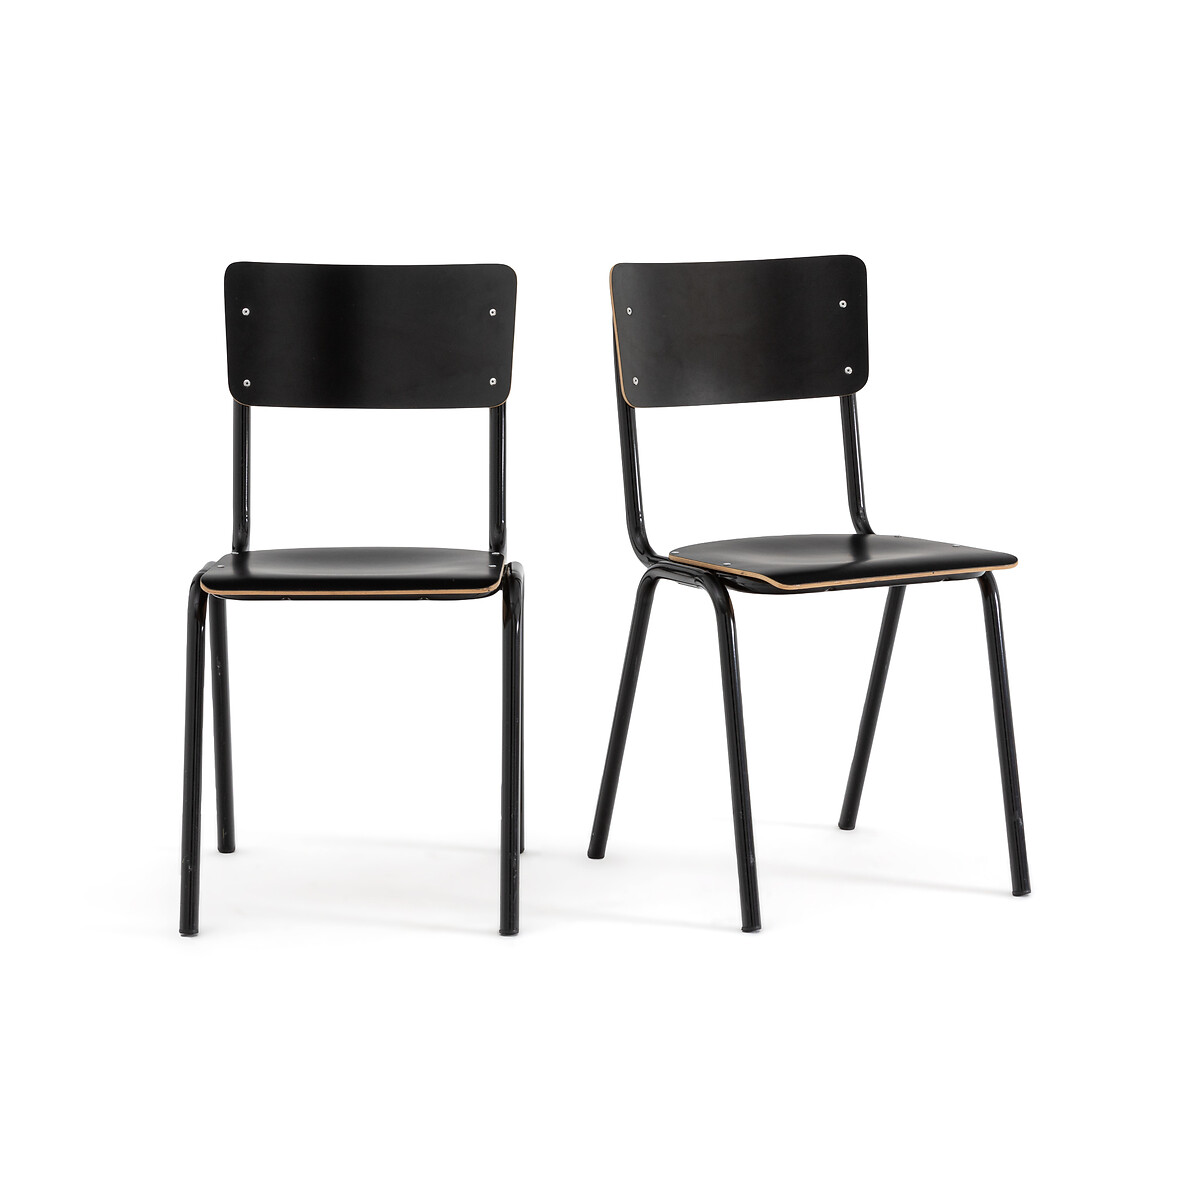 Комплект из 2 стульев школьных Сборных Hiba единый размер черный